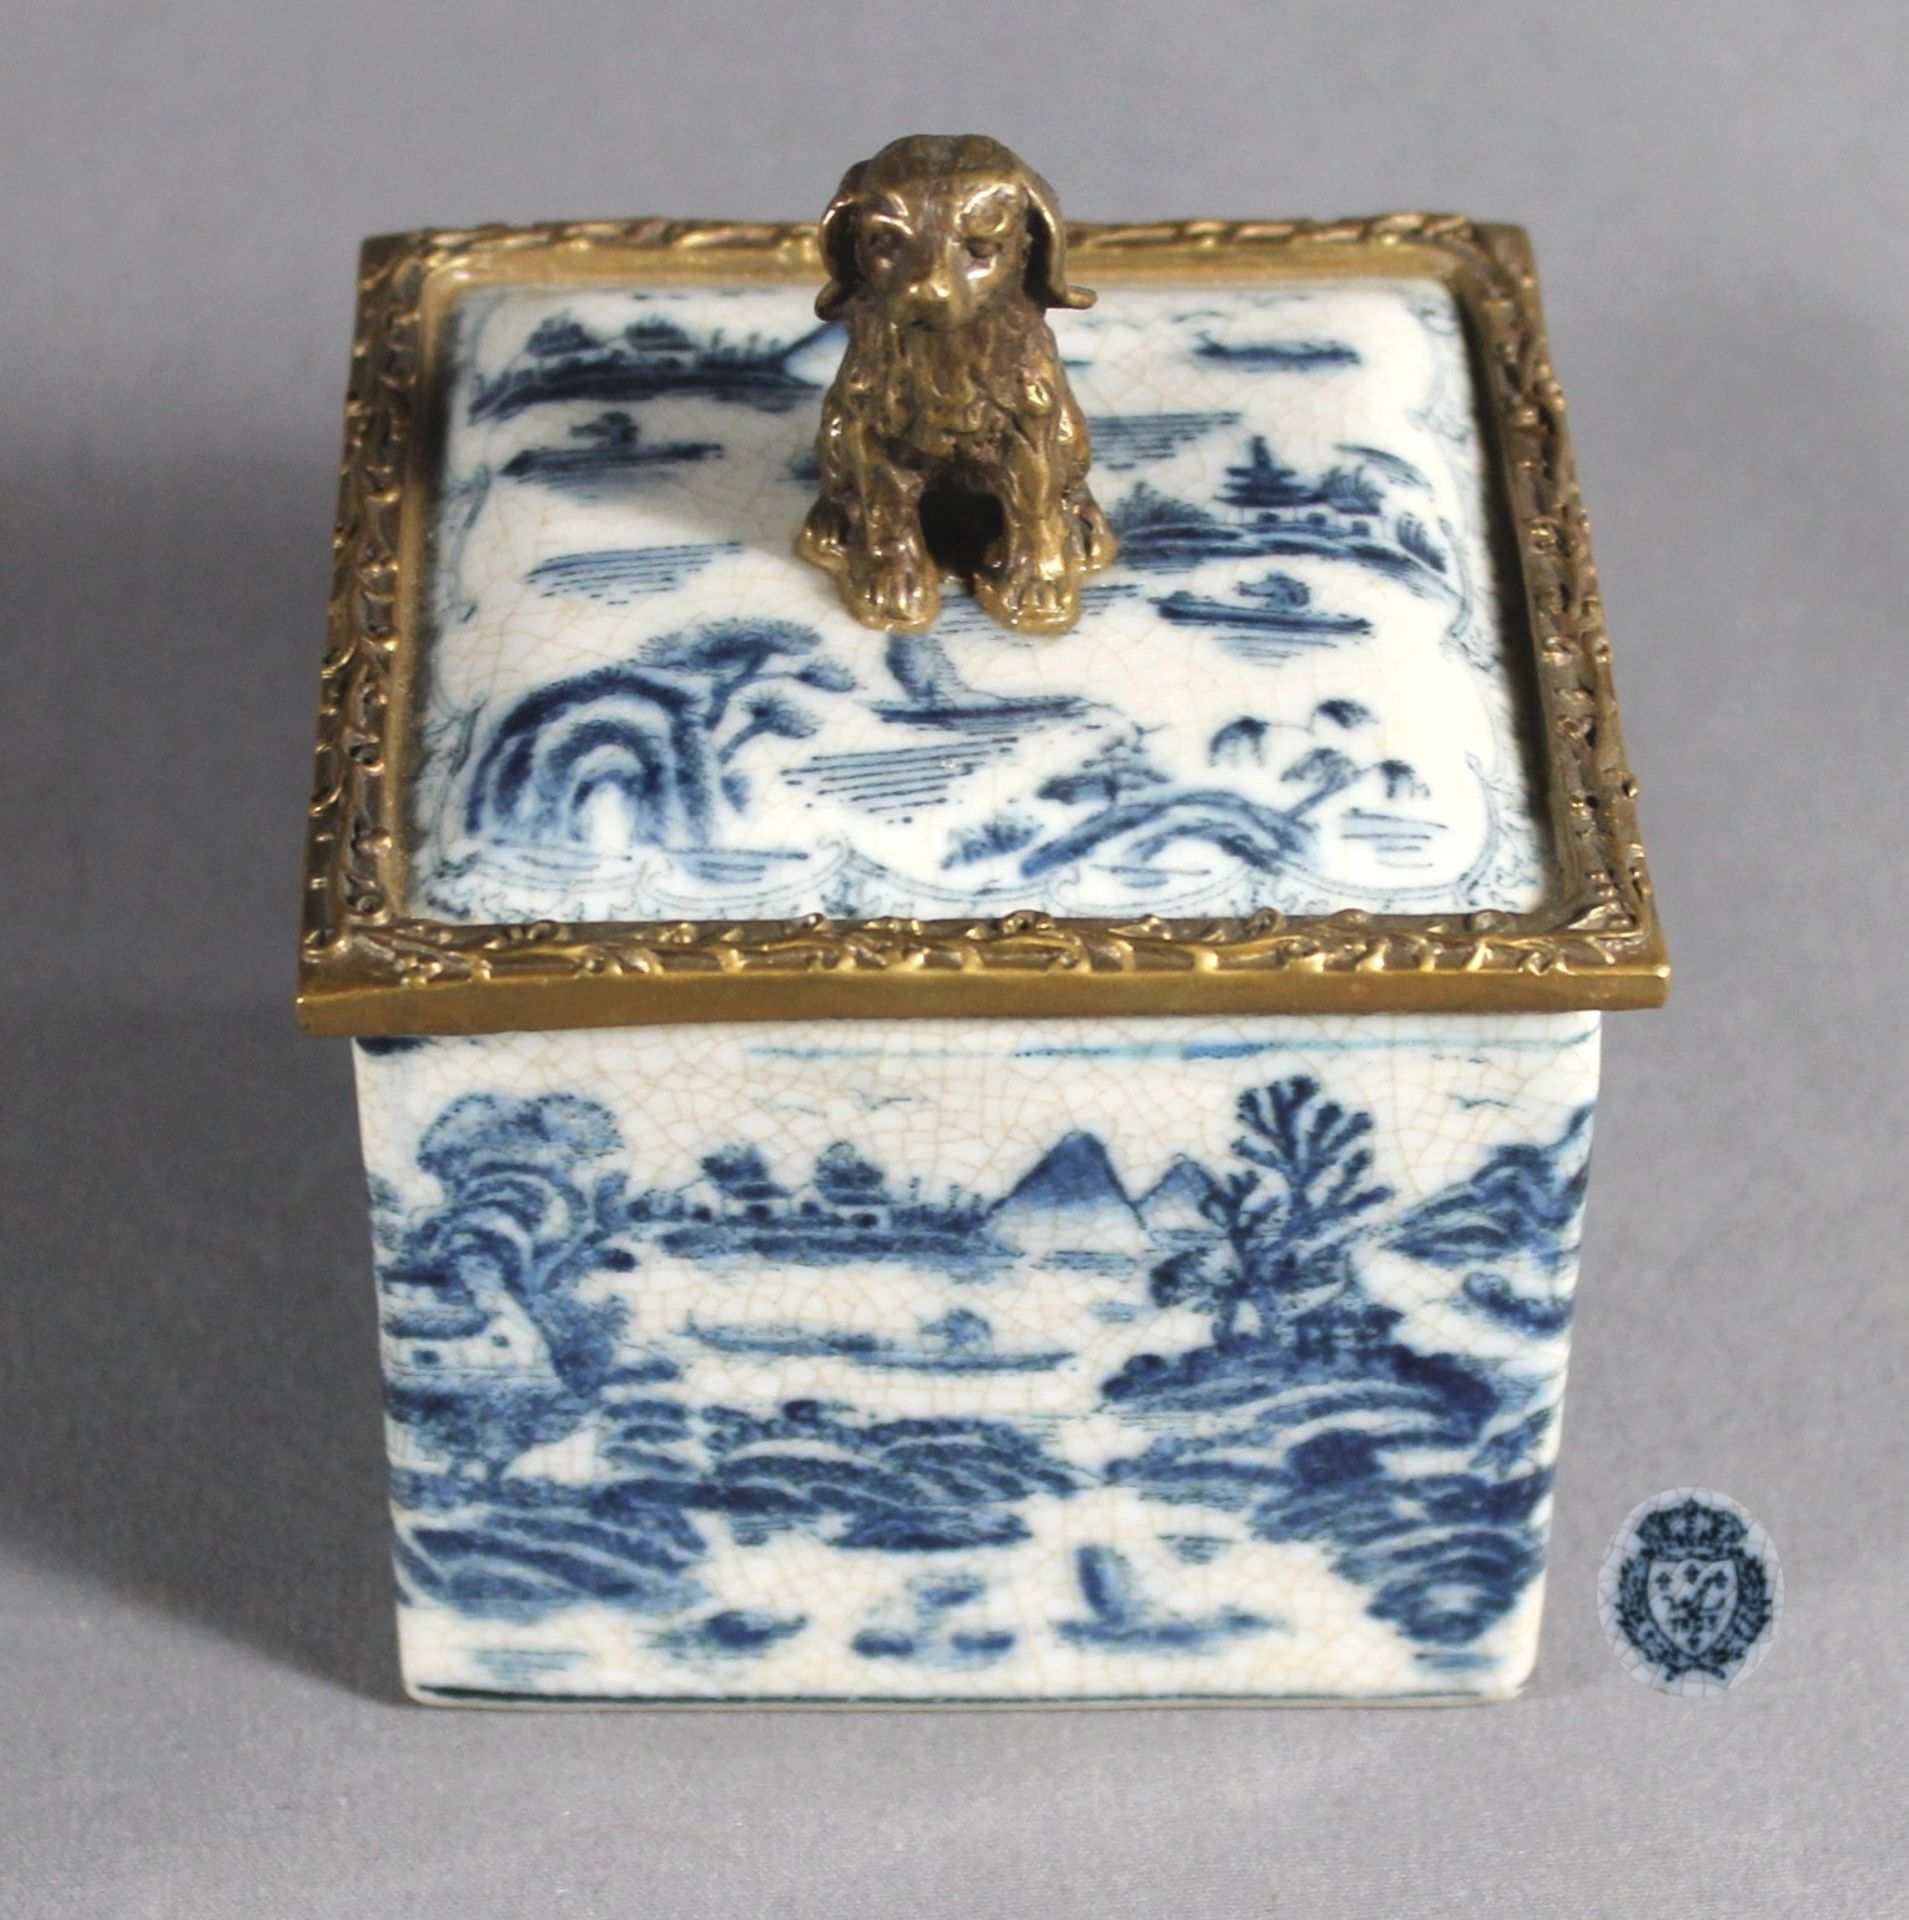 1 quadratische Deckeldose Keramik, Wandung und Deckel mit blauem Landschaftsdekor, Deckel in Messing